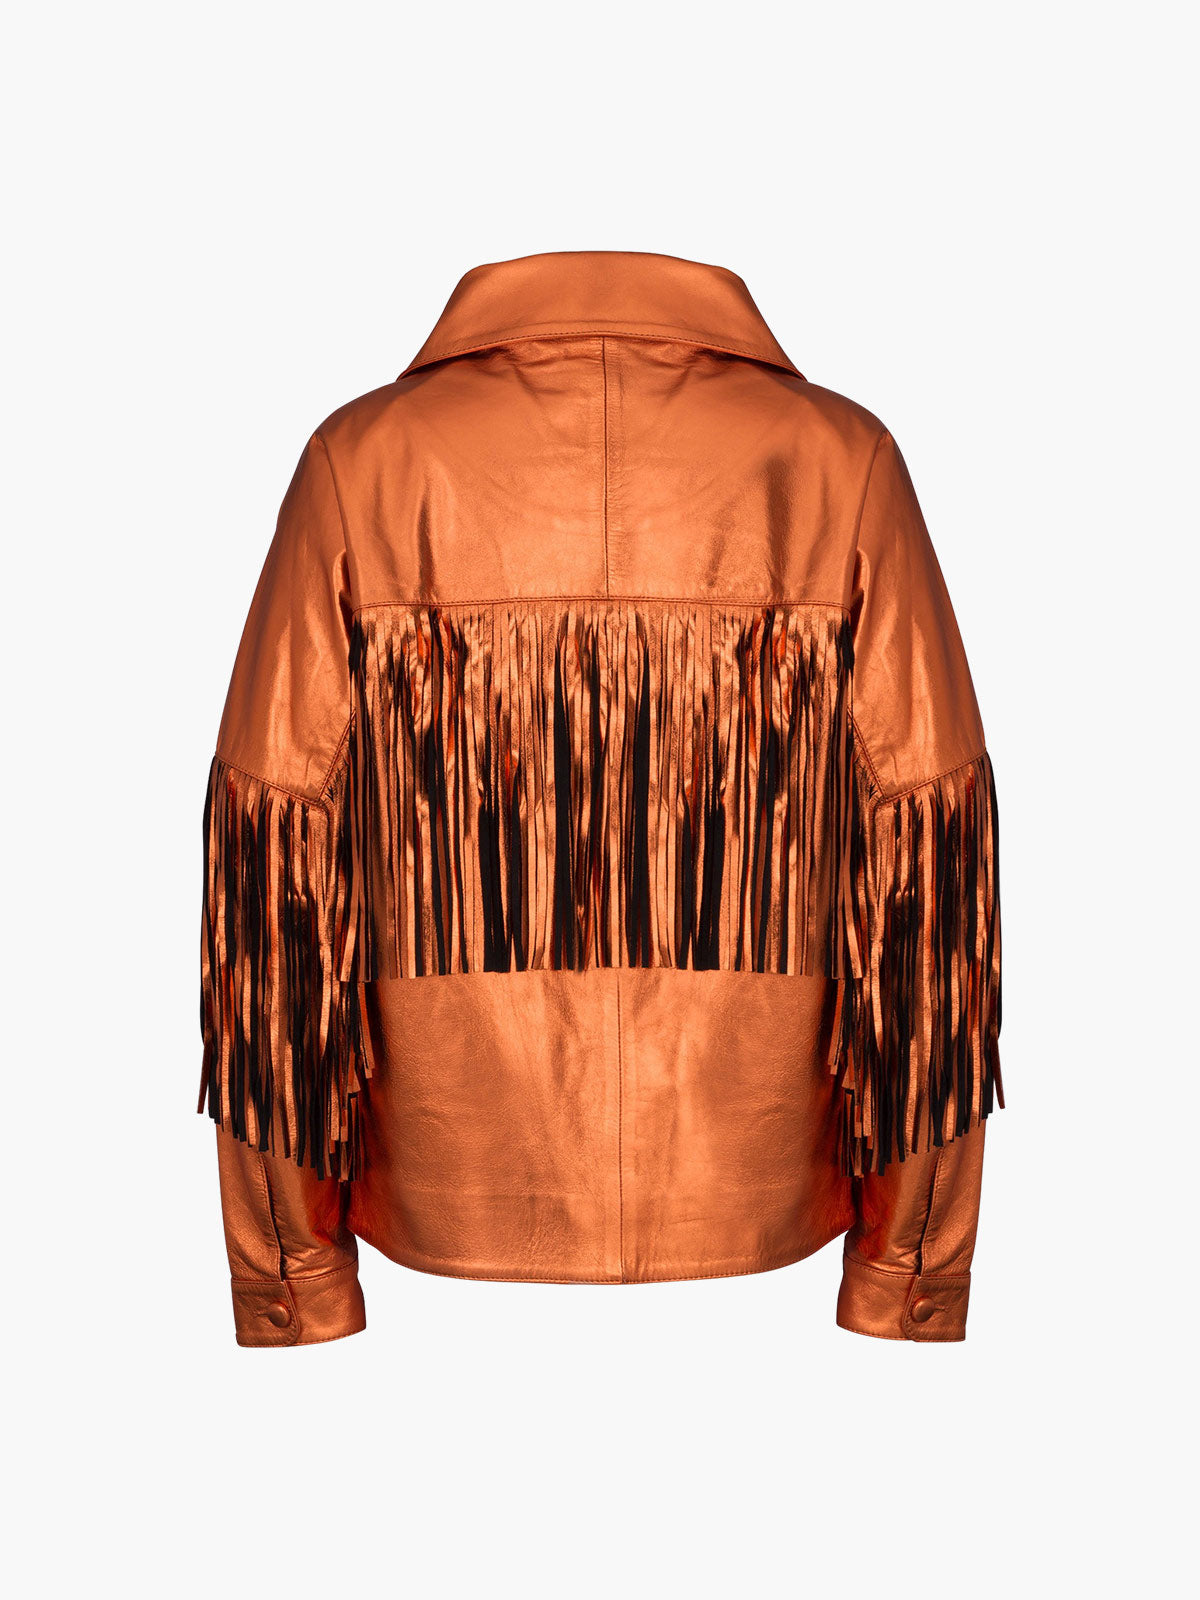 Taylor Jacket | Metallic Orange - Fashionkind